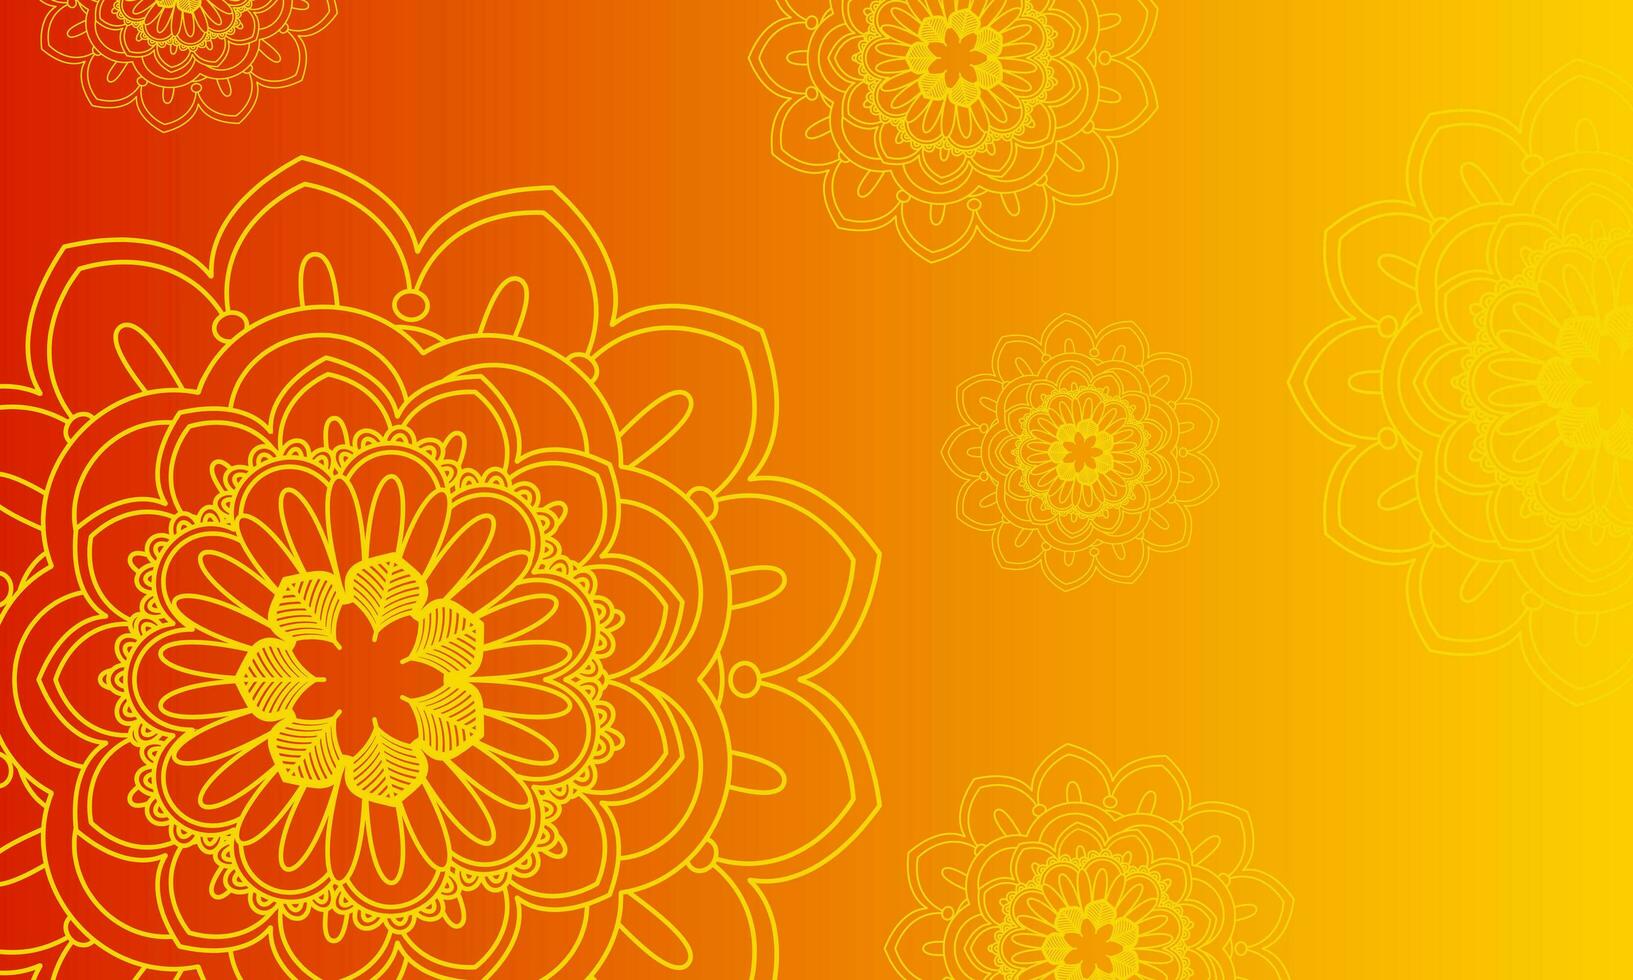 Flower mandala on orange background floral illustration. vector